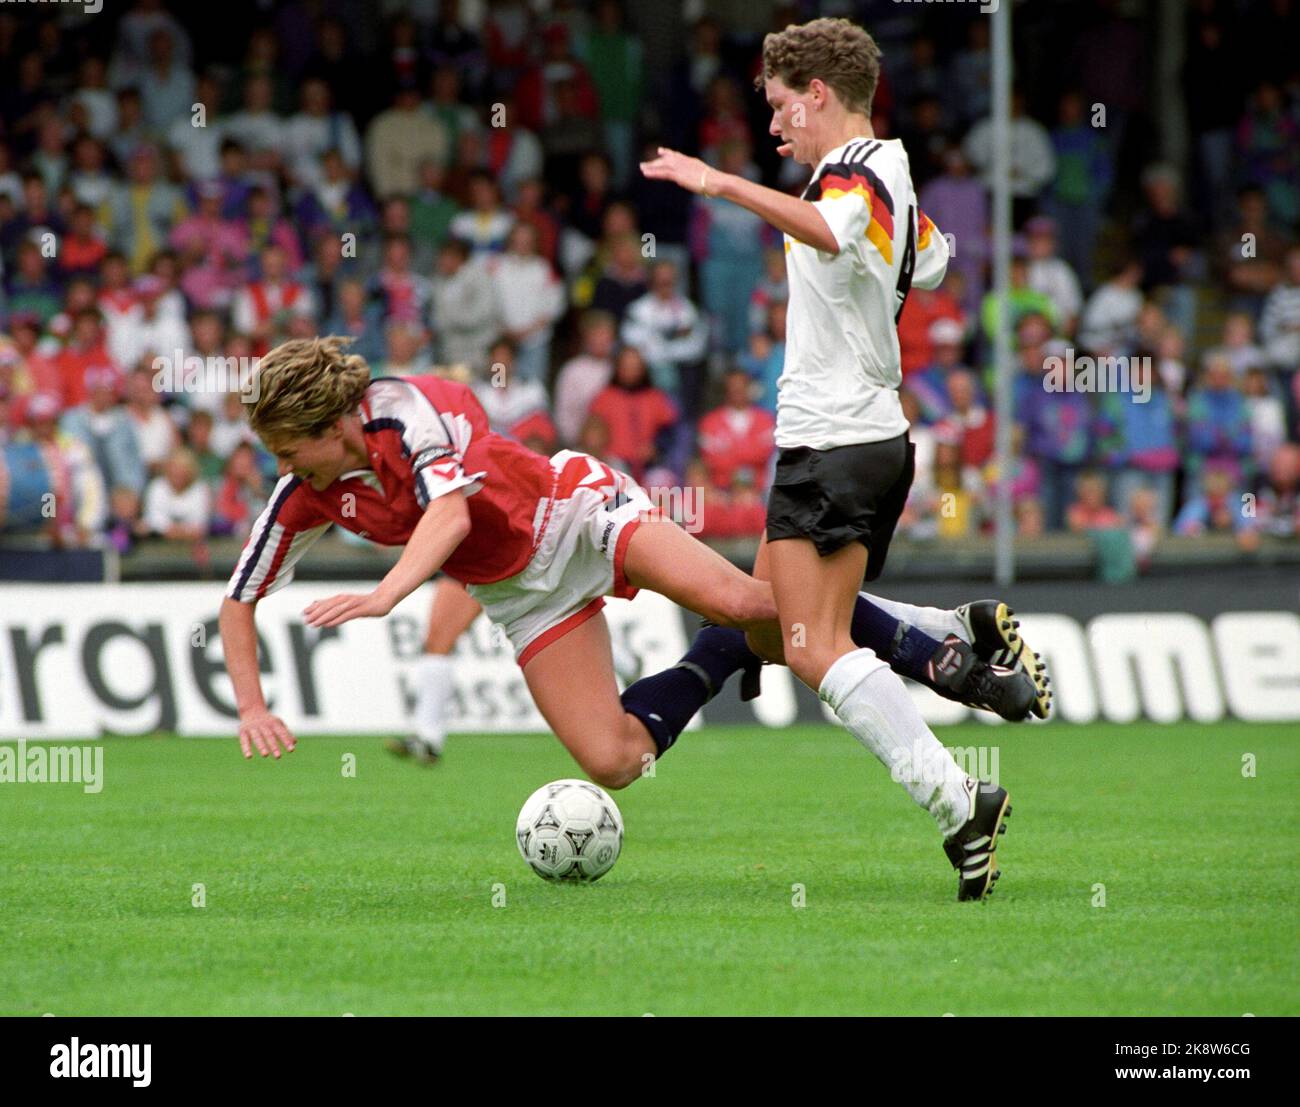 Aalborg, Danemark 19910714 Championnat d'Europe de football pour femmes à Ålborg. La finale a été remportée par l'Allemagne. Norvège-Allemagne 1-3. Photo: Agnete Brun / NTB Banque D'Images